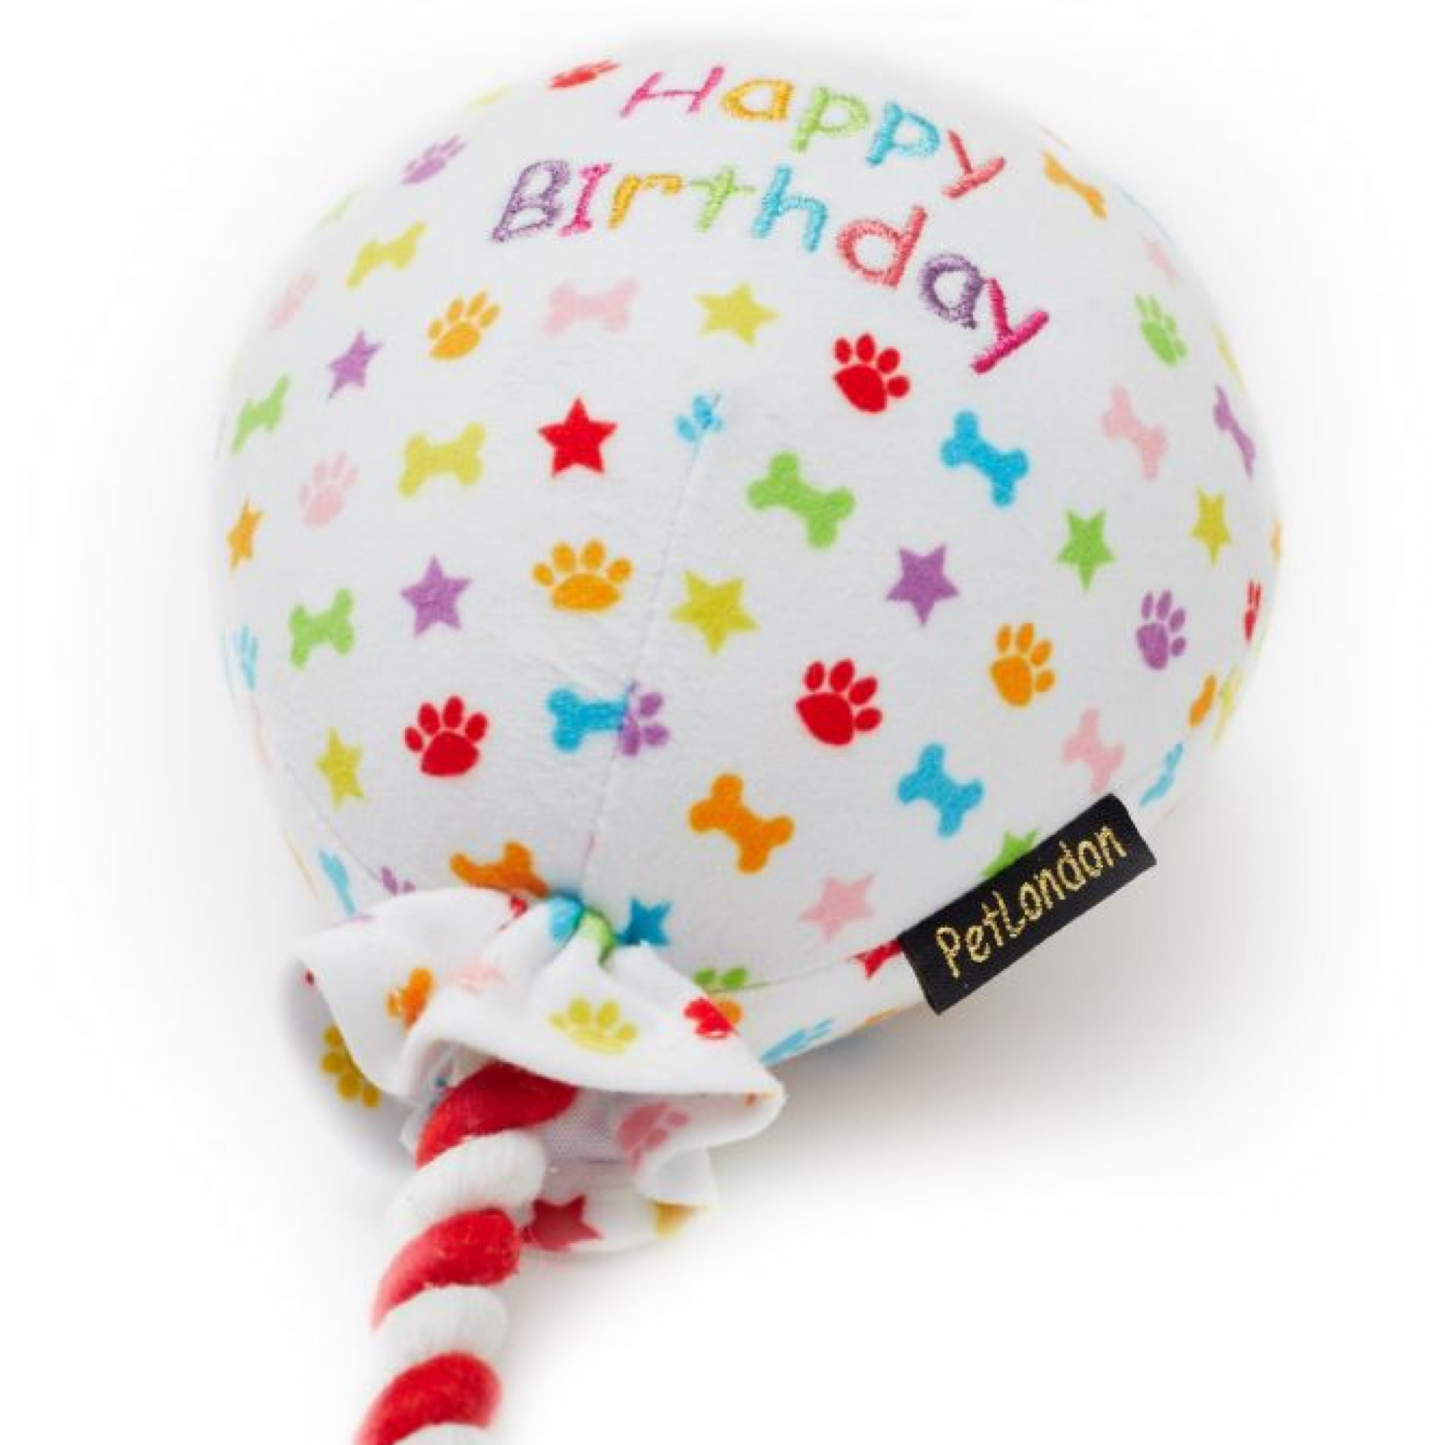 Pet London Birthday Balloon